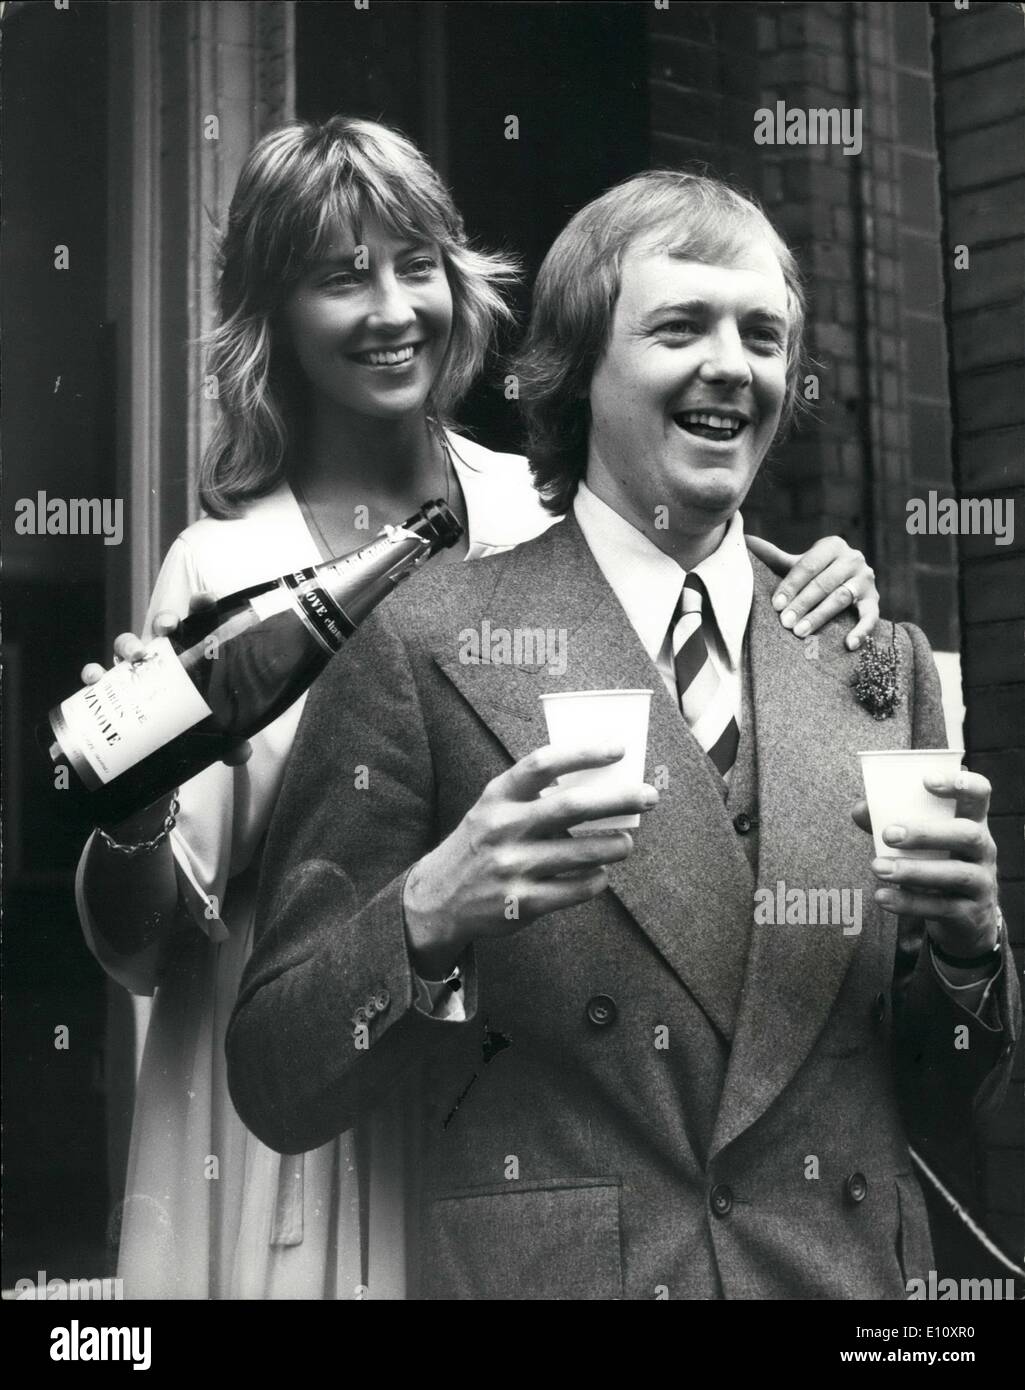 08 août 1974 - M. Superstar épouse - Tim Rice, le parolier riches de la comédie musicale ''Jésus Christ Superstar'' s'est marié aujourd'hui à 27 ans, Jame McIntosh, un assistant de production avec le Théâtre National. La cérémonie a eu lieu au bureau du registre de Kensington. Banque D'Images